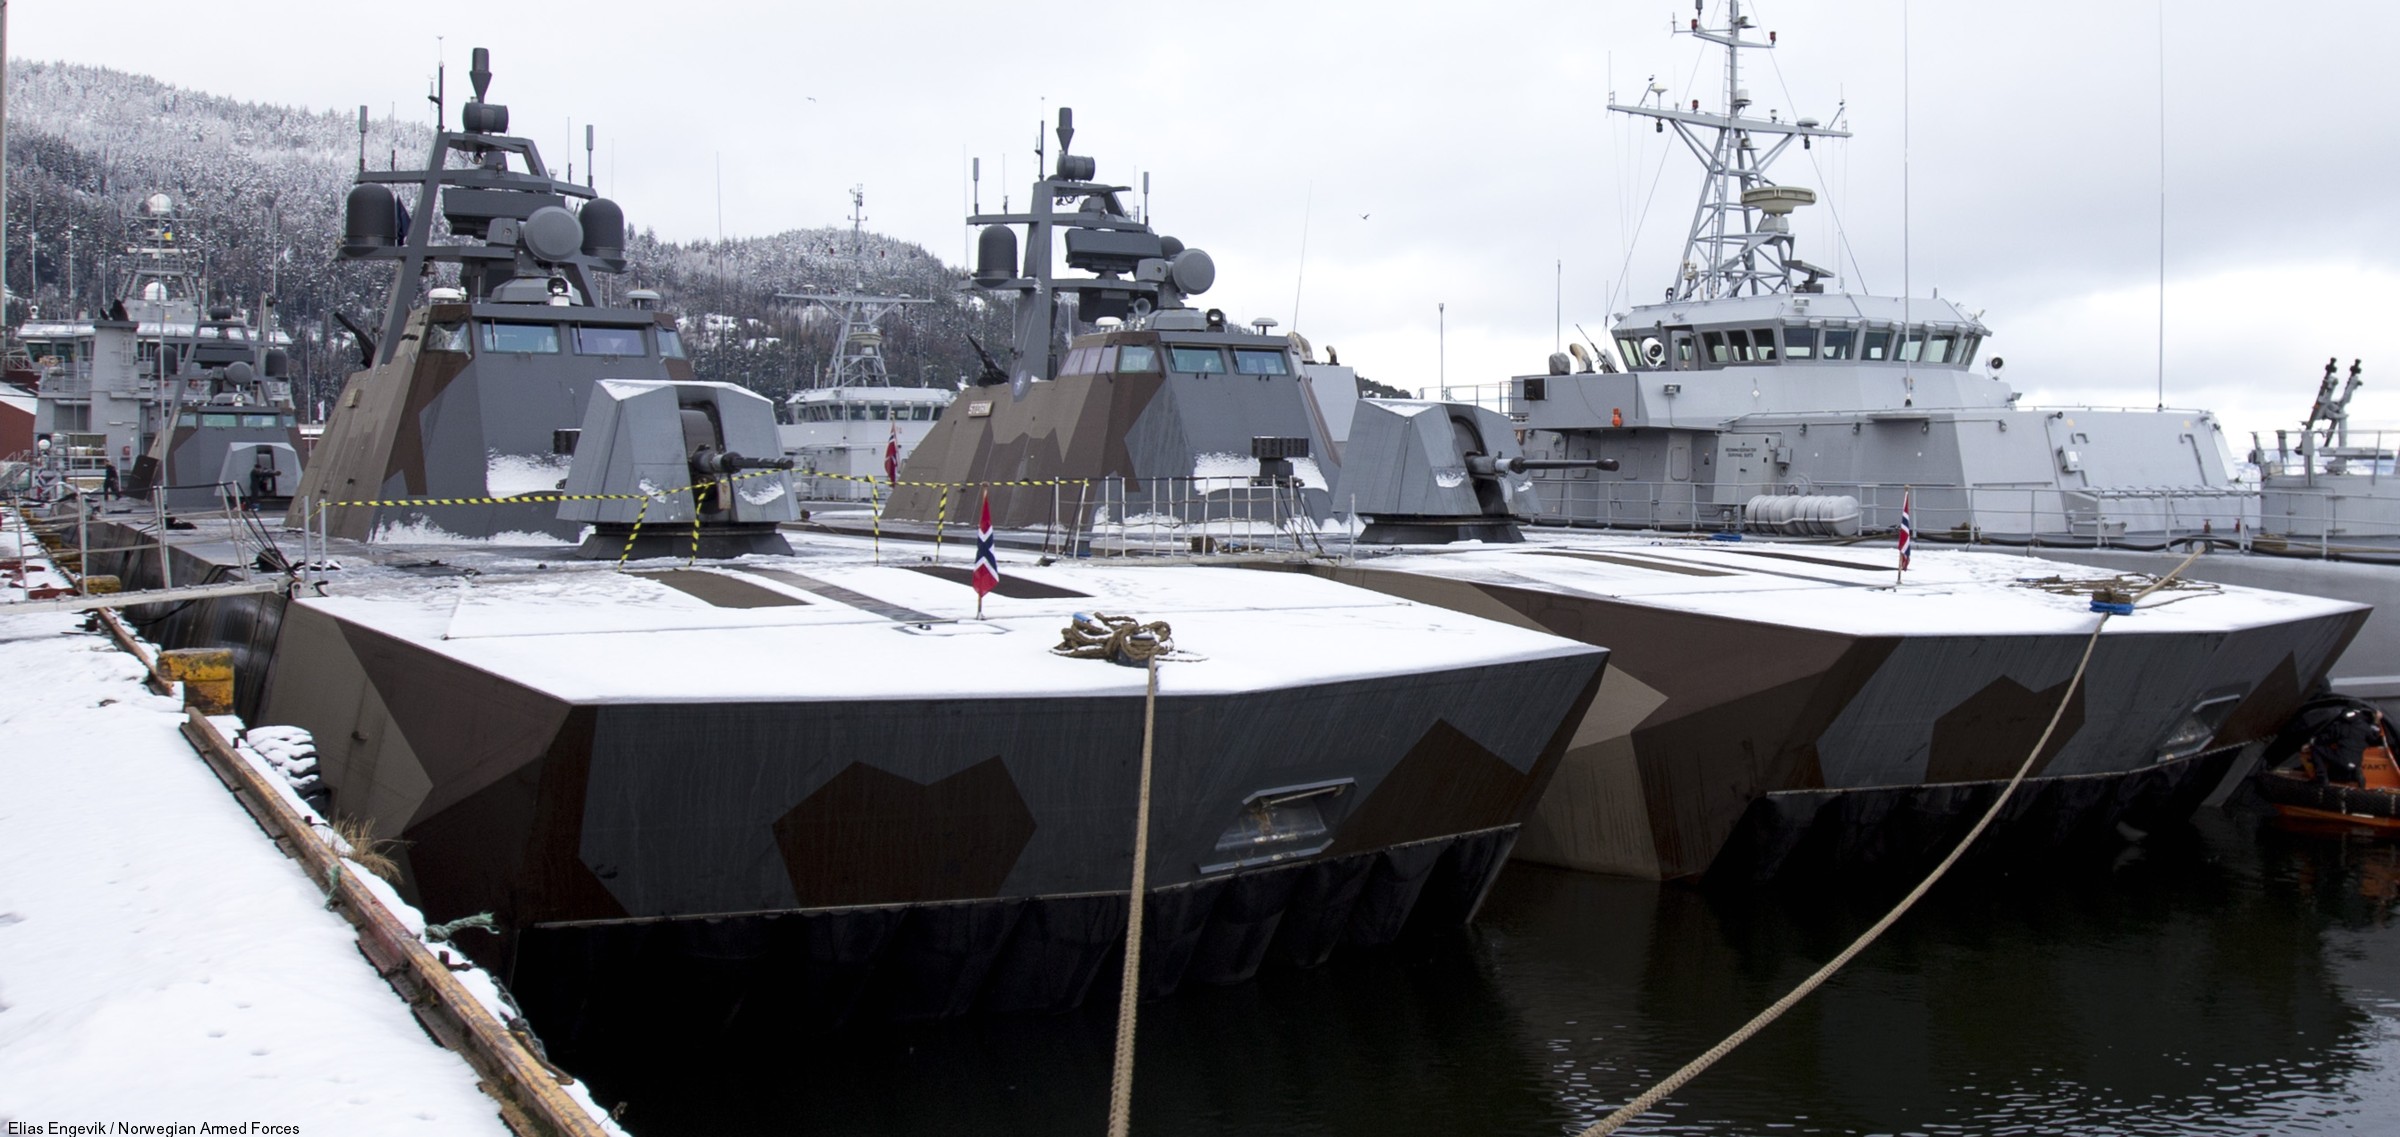 skjold class corvette knm hnoms royal norwegian navy sjoforsvaret 18